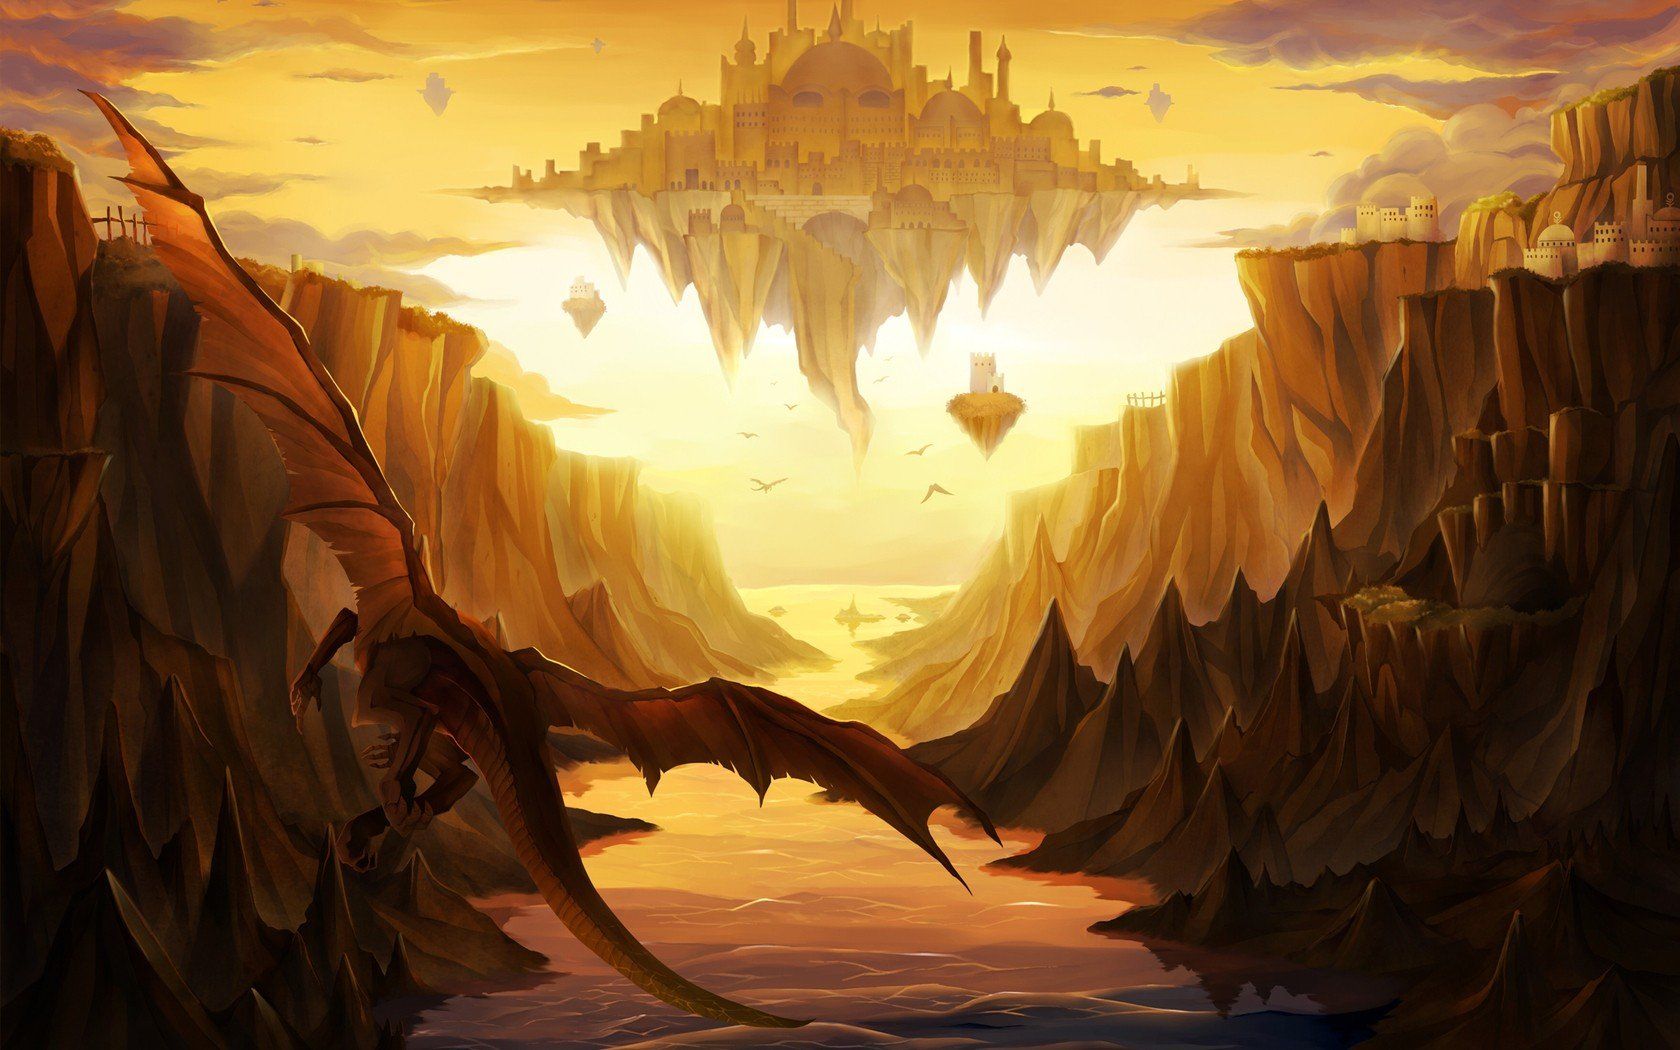 Castles dragons valleys rocks fantasy art floating islands